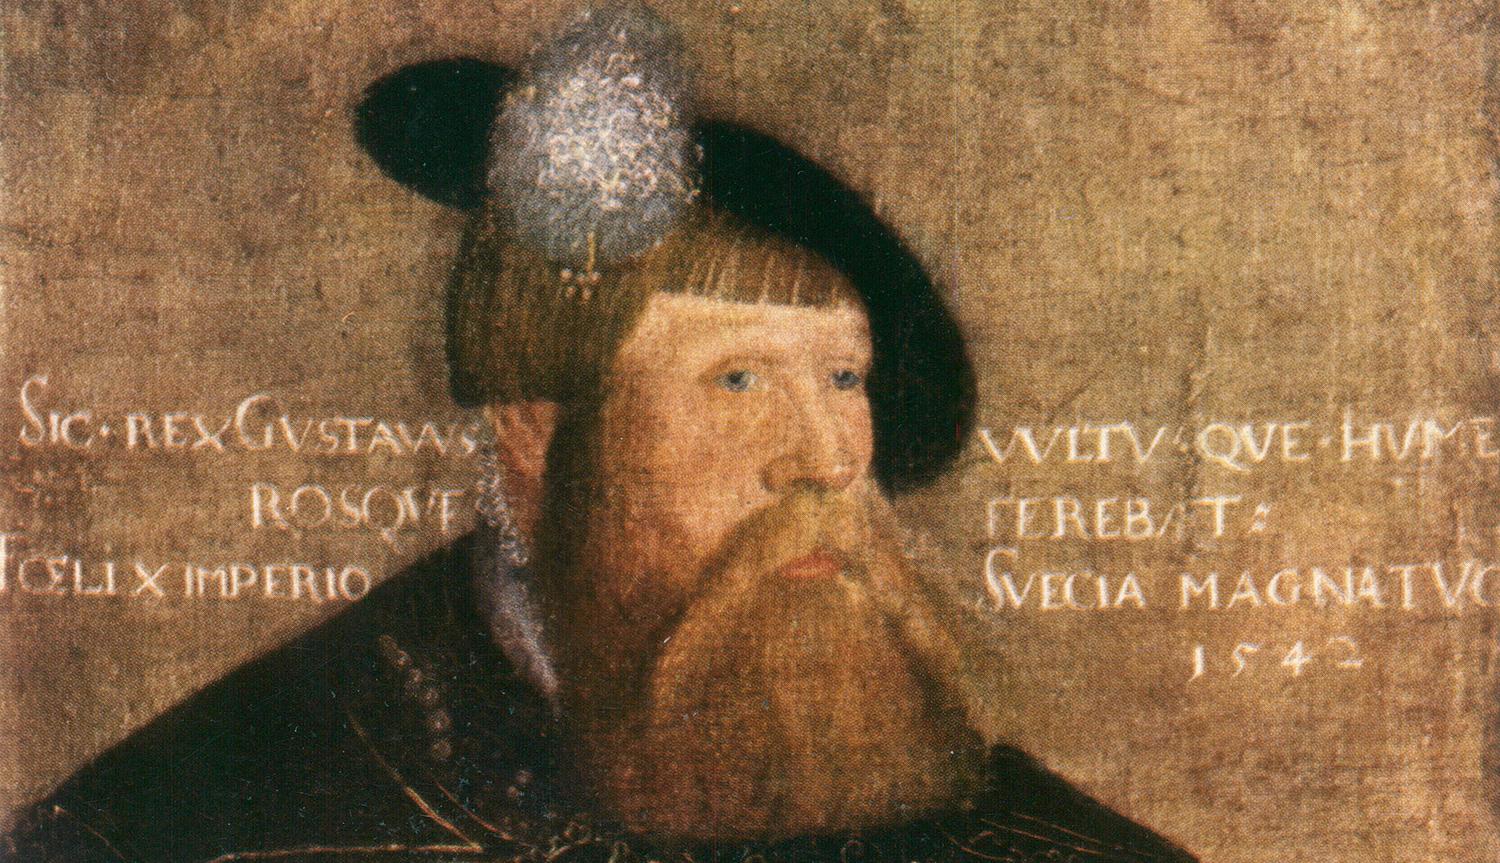 Gustav Vasa verkar mer ha varit en tyrann än landsfader.